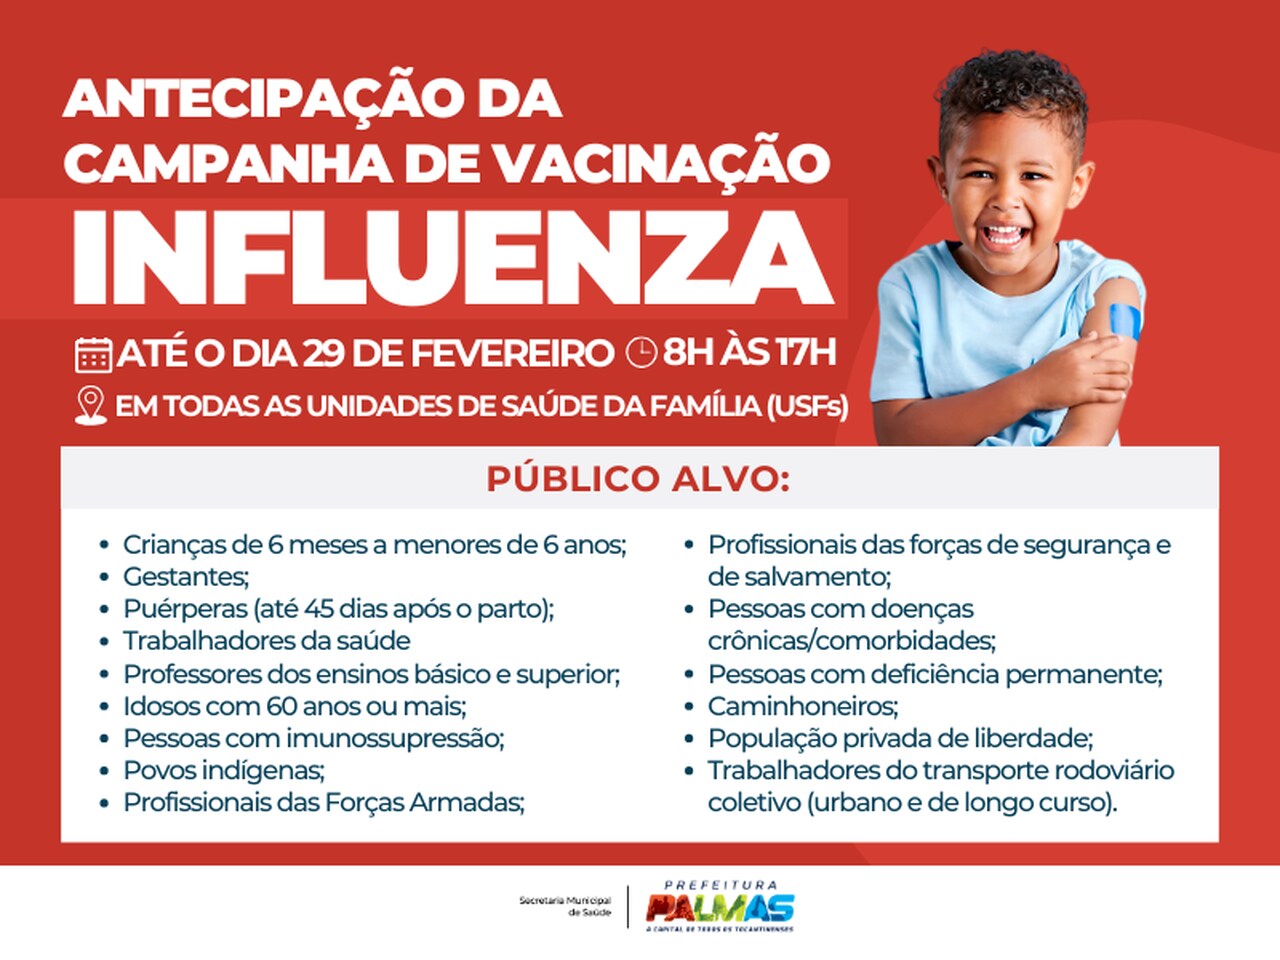 Campanha de vacinação contra influenza é antecipada em Palmas; saiba detalhes